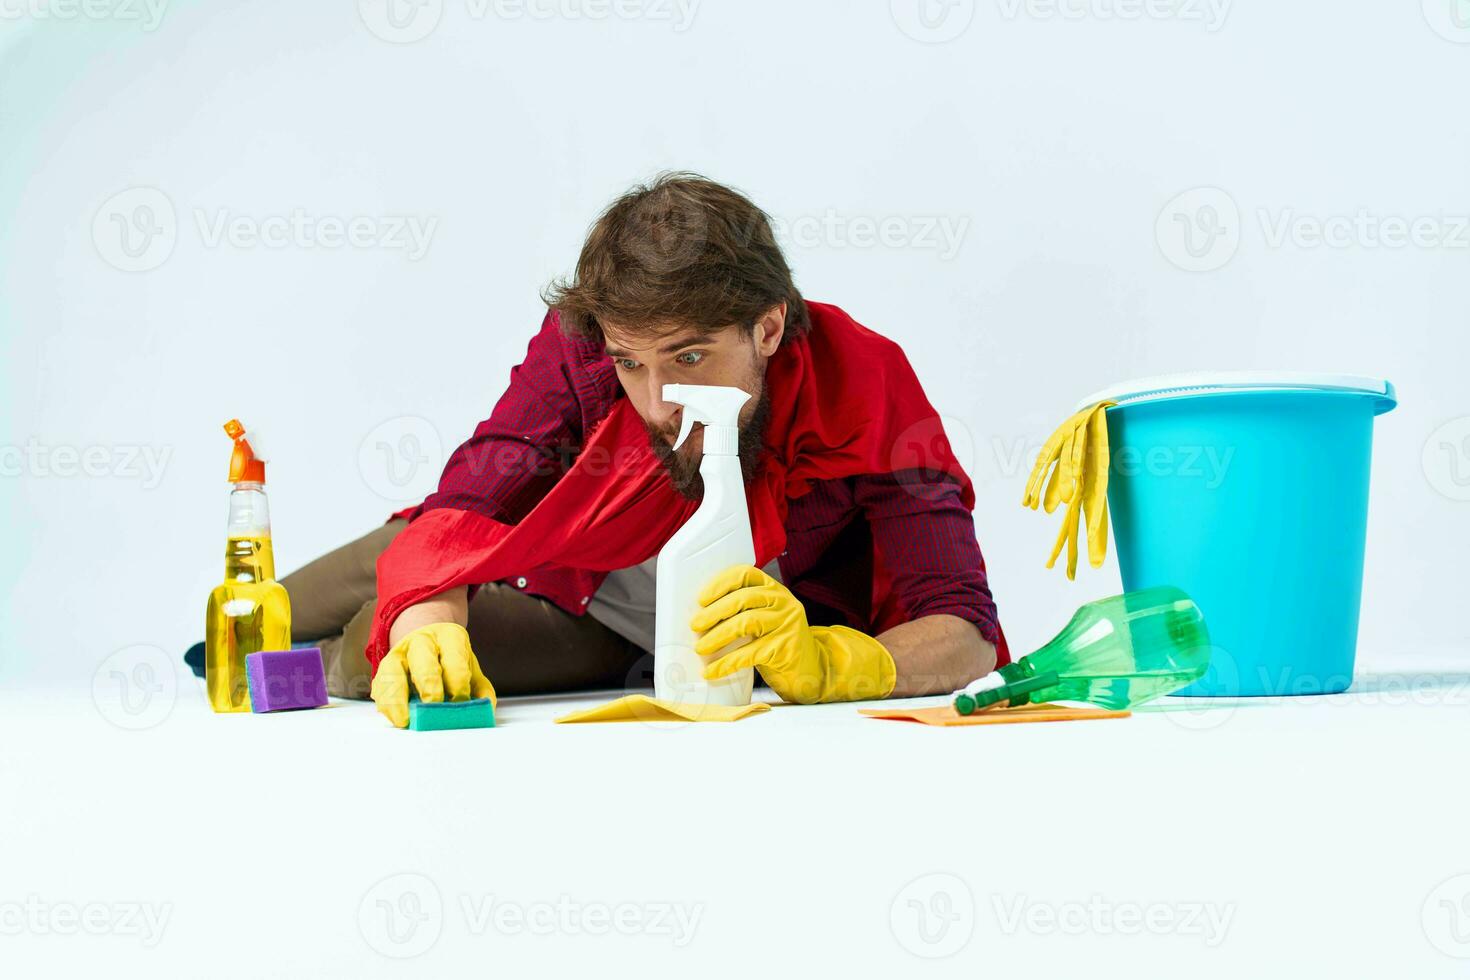 limpiador limpieza suministros piso Lavado tareas del hogar estilo de vida foto